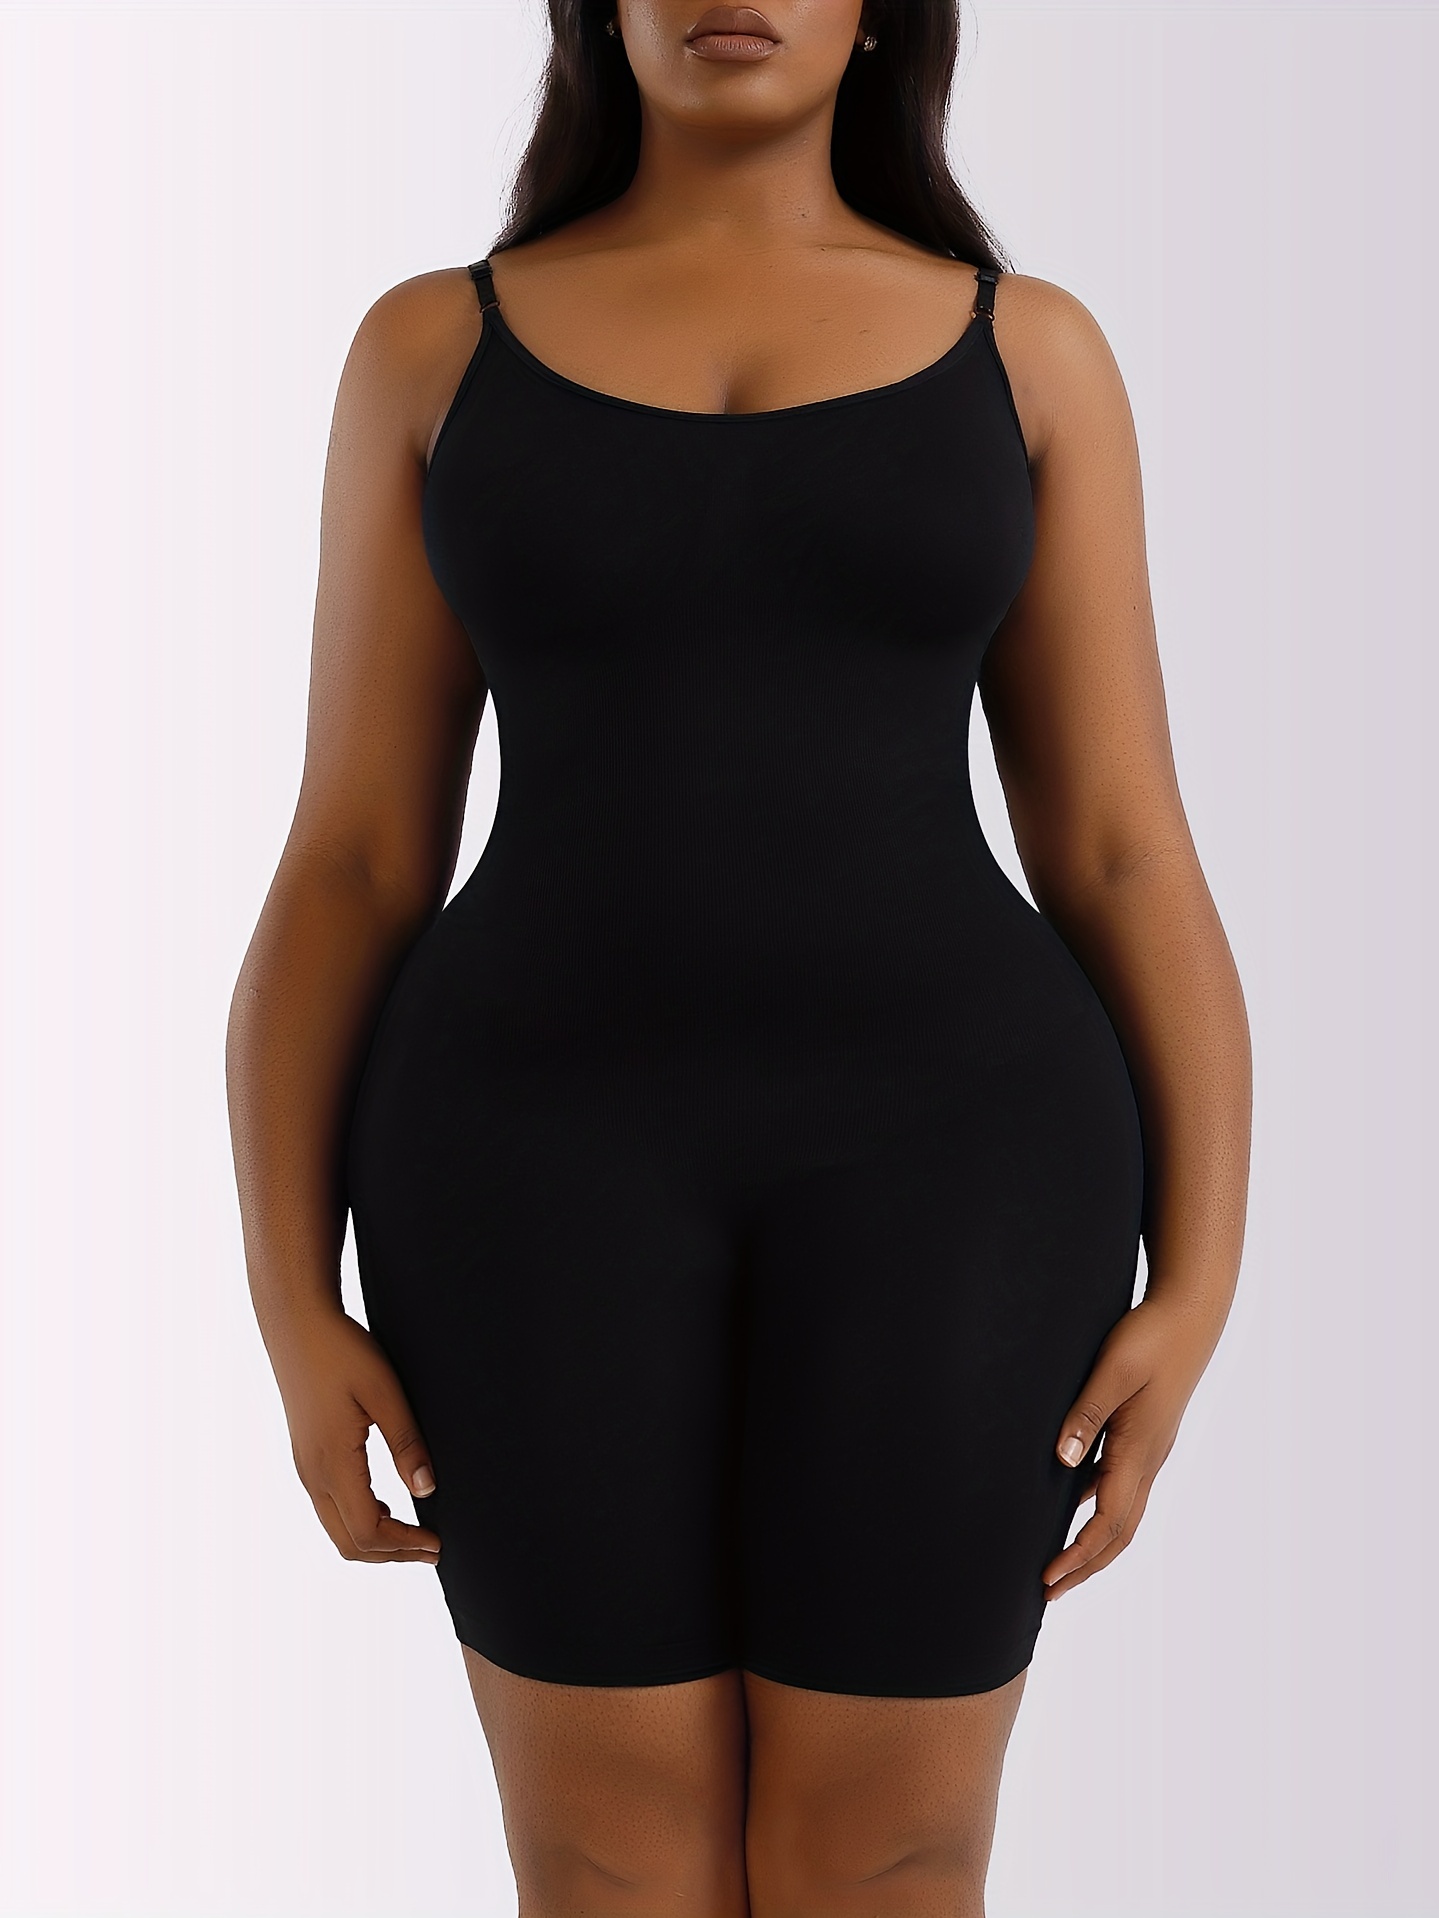 PMUYBHF Long Sleeve Black Jumpsuit Shapewear for Women Body Shaper Zipper  Open Bust Bodysuit Short Jumpsuit Black Romper Long Sleeve Tummy Control 